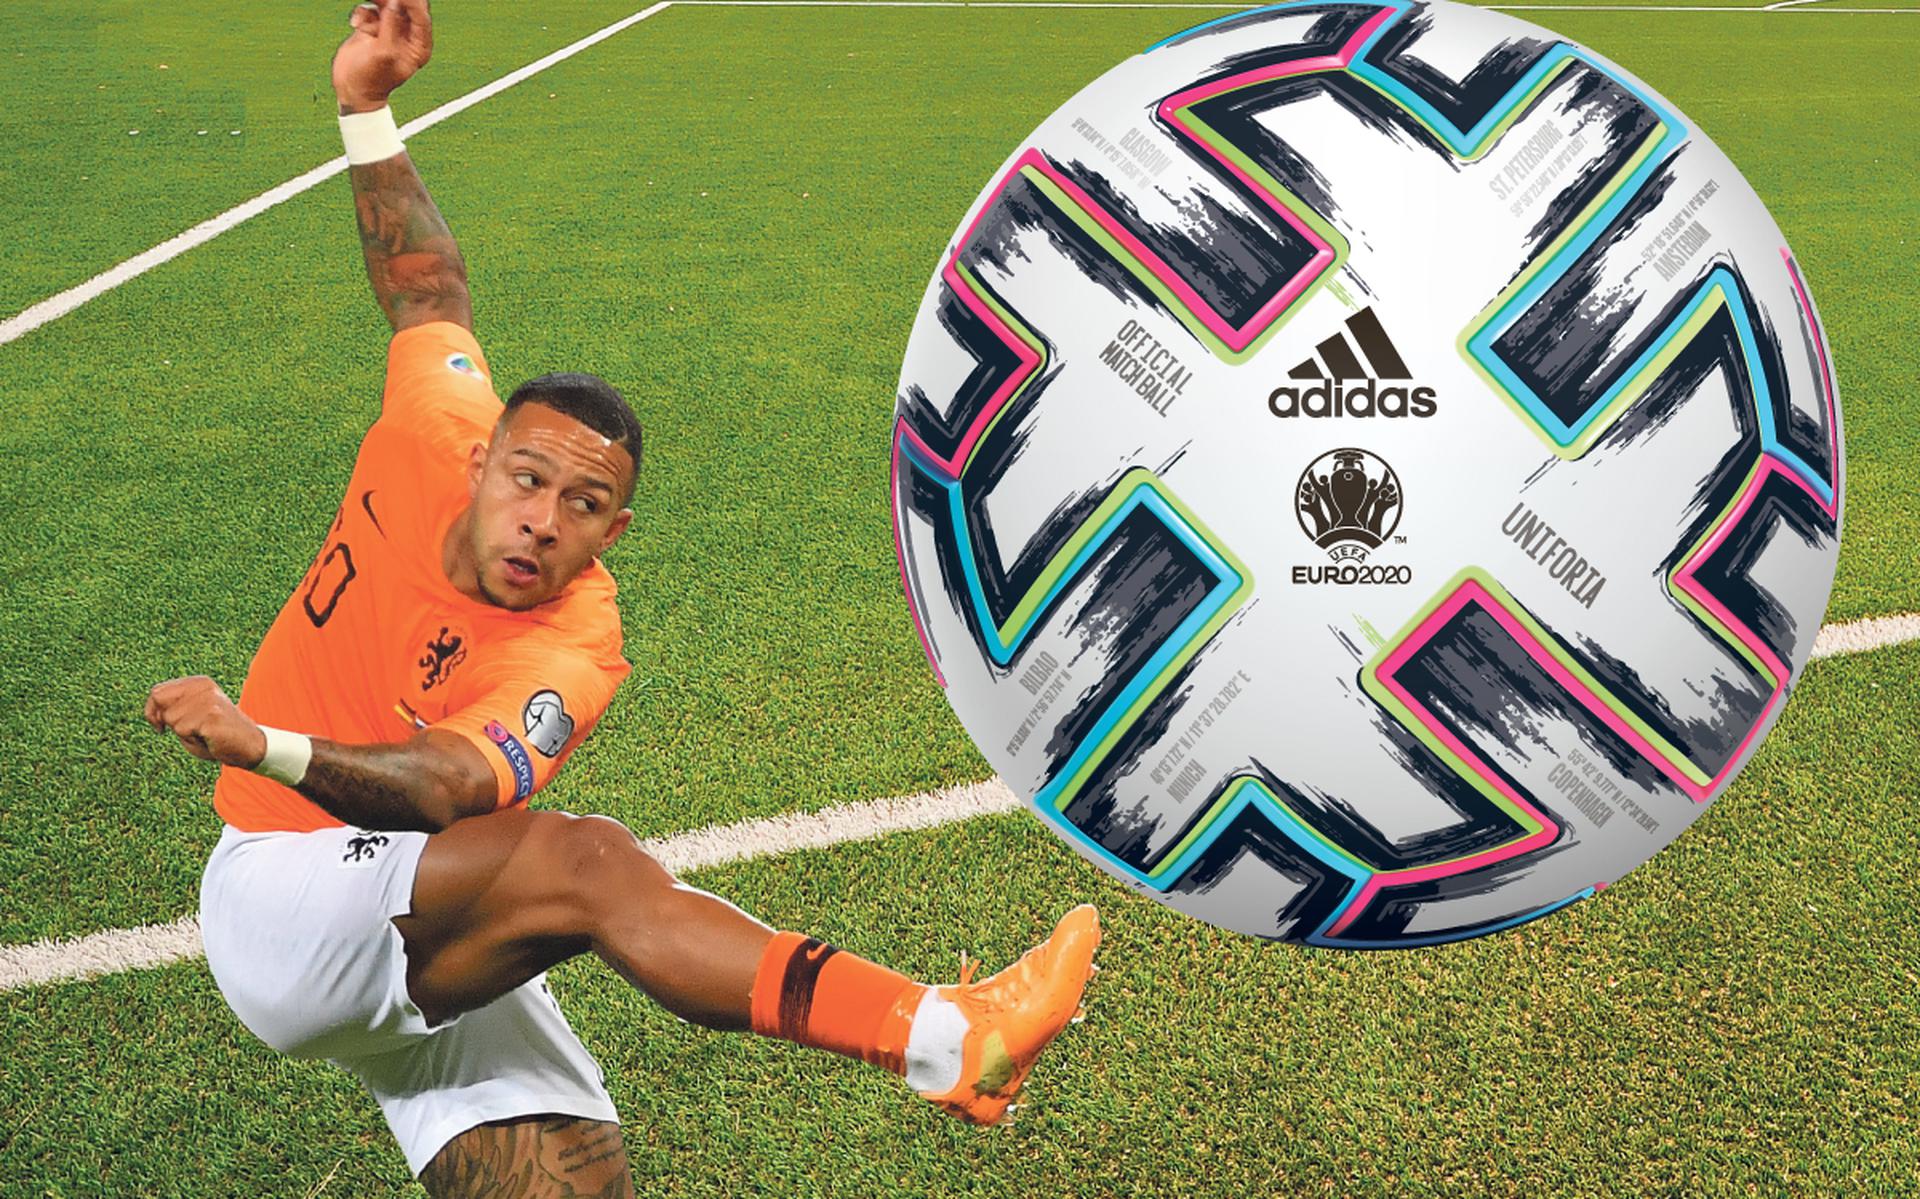 Uitvoeren hebben informeel Dit is de kleurrijke bal waar de spelers op het EK voetbal tegen aan  schoppen, de Unifiora | in beeld - Dagblad van het Noorden